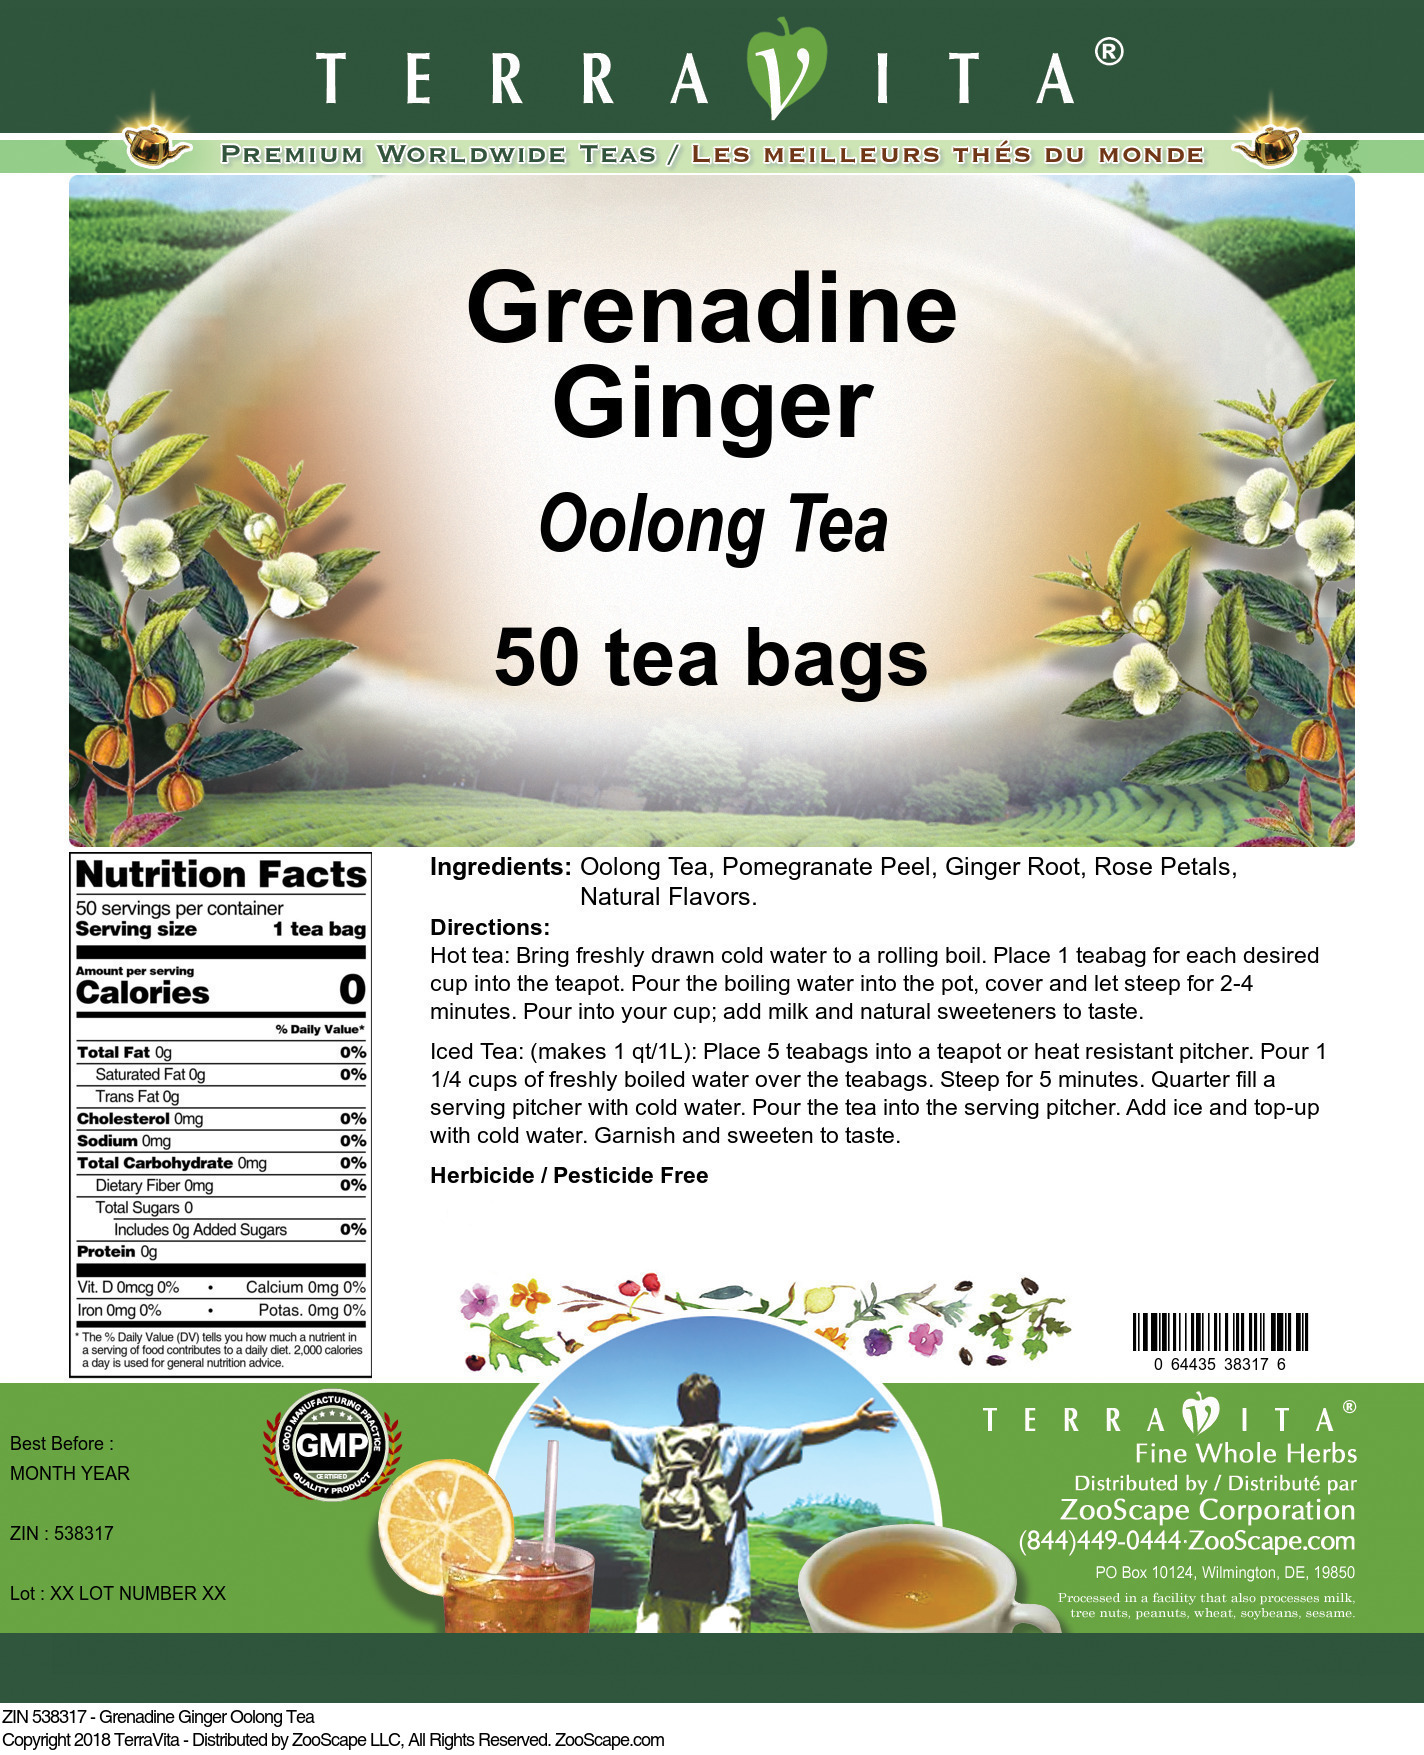 Grenadine Ginger Oolong Tea - Label